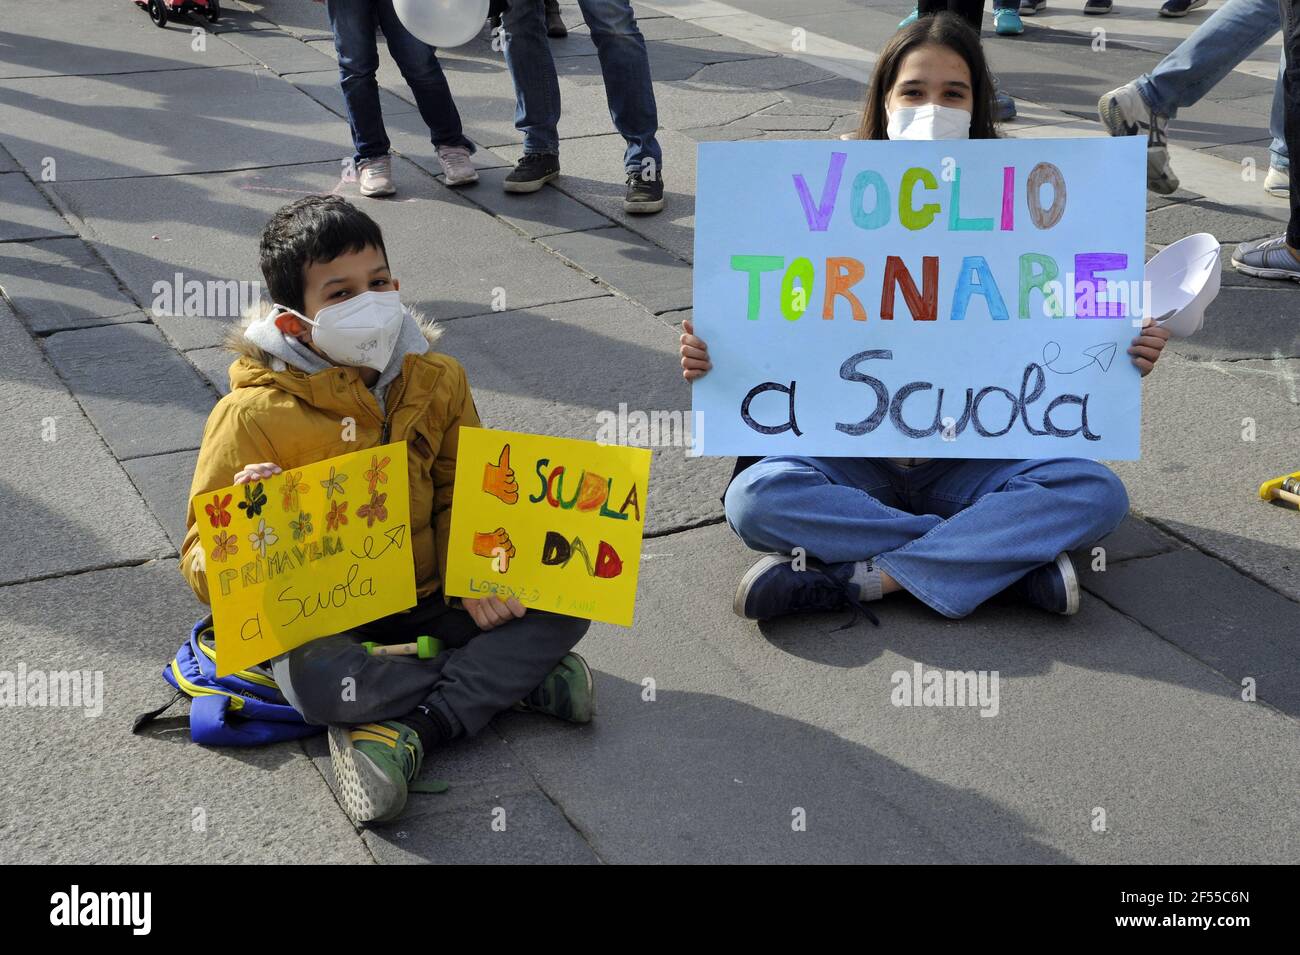 Mailand, 21. März 2021, Demonstration von dem Netzwerk Scuola in Presenza (Schule in Anwesenheit) organisiert, um die Wiedereröffnung der Schulen und das Ende des DAD, Fernstudium, von der Regierung, um die Epidemie von Covid19 Virus zu begrenzen verabschiedet zu fordern Stockfoto